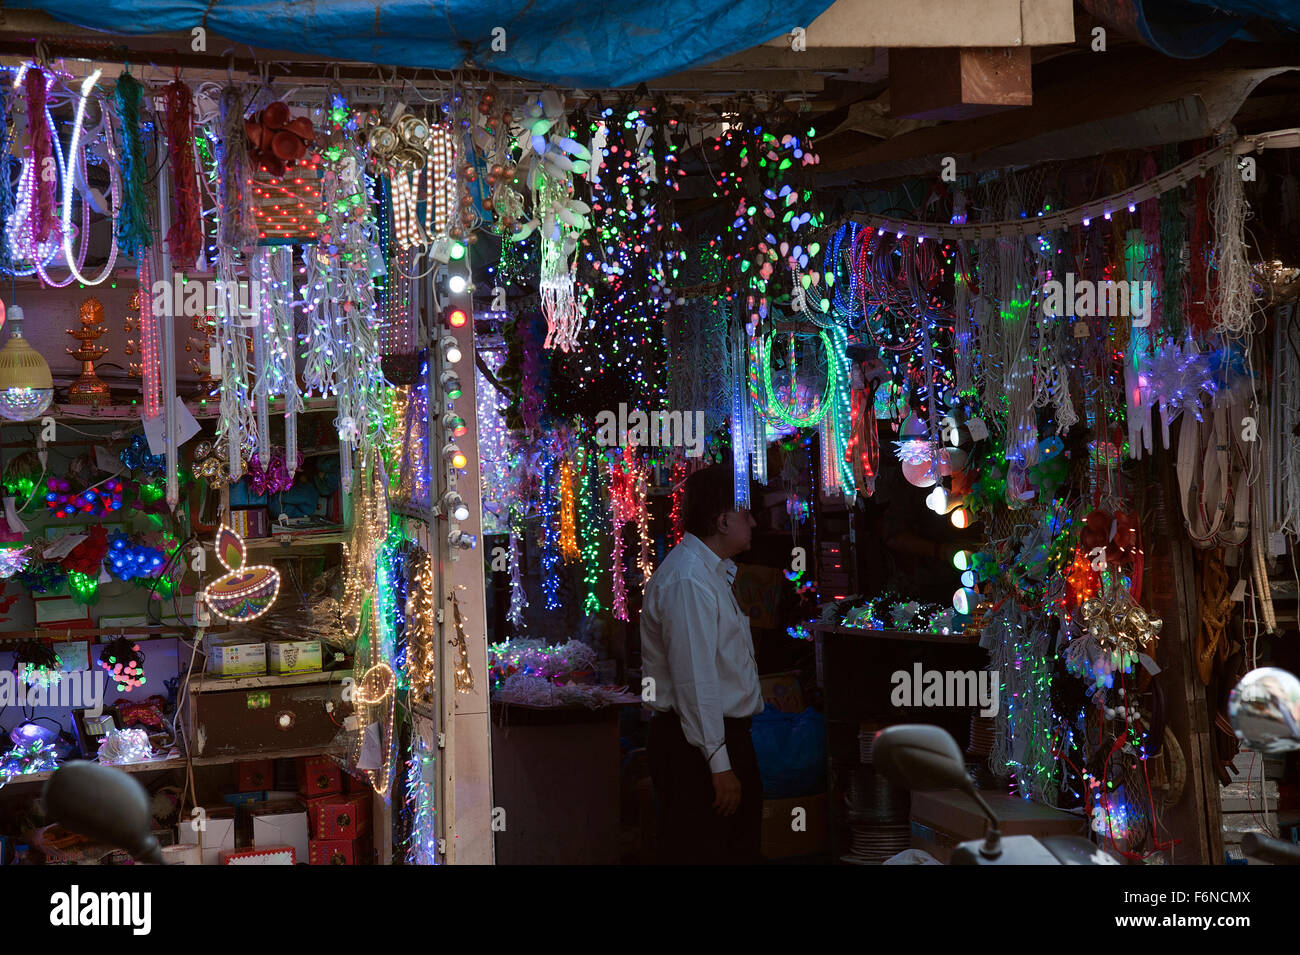 L'image de boutique d'éclairage a été prise à Lohar Chawl, Mumbai Inde Banque D'Images